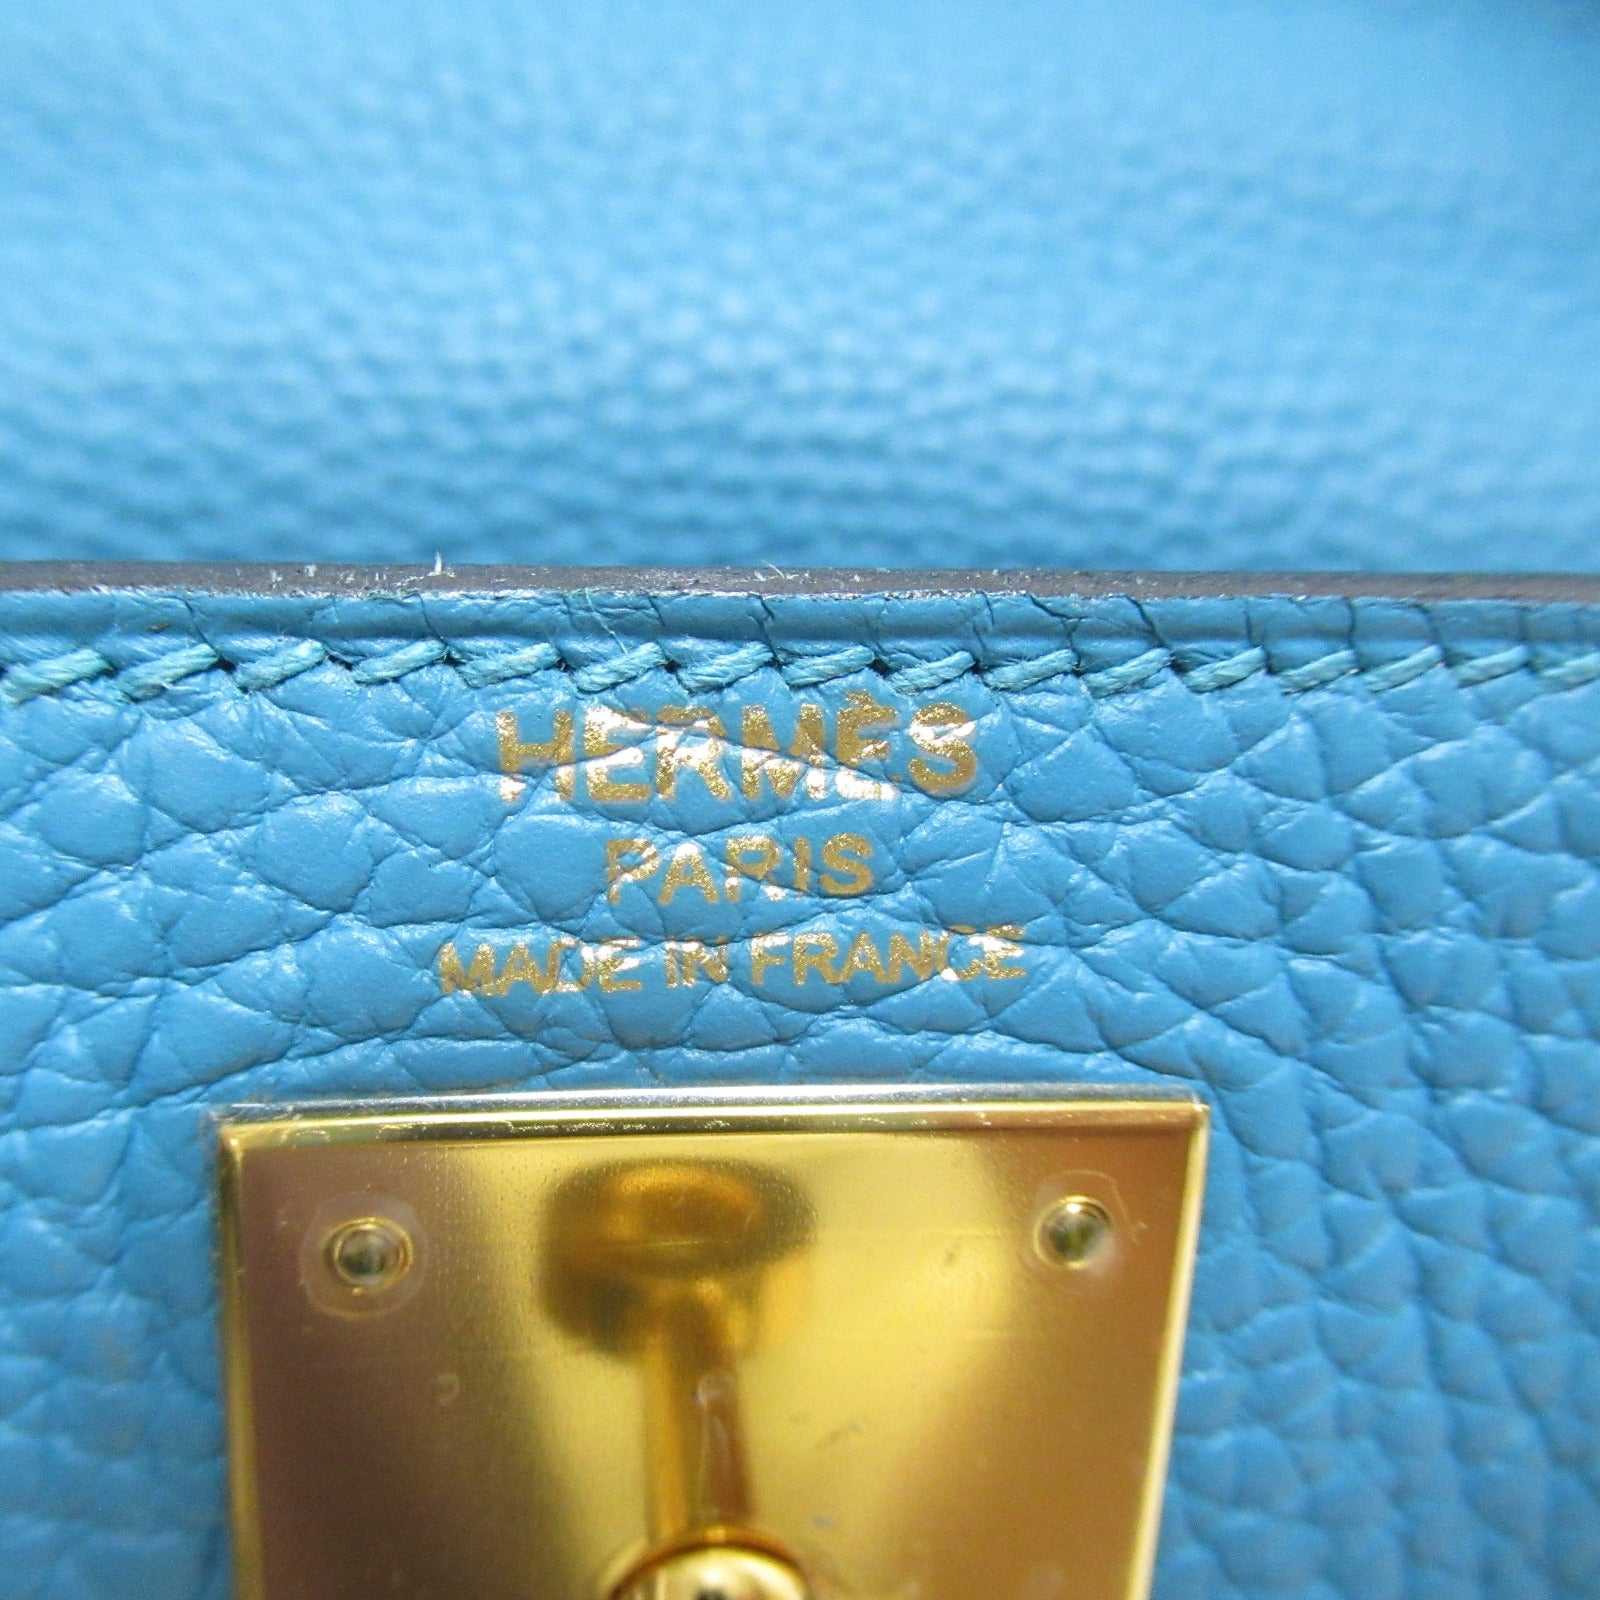 Hermes Kelly 28 Handbag Handbag Handbag Handbags Handbags Handbags Handbags Handbags Handbags Handbags Handbags Handbags